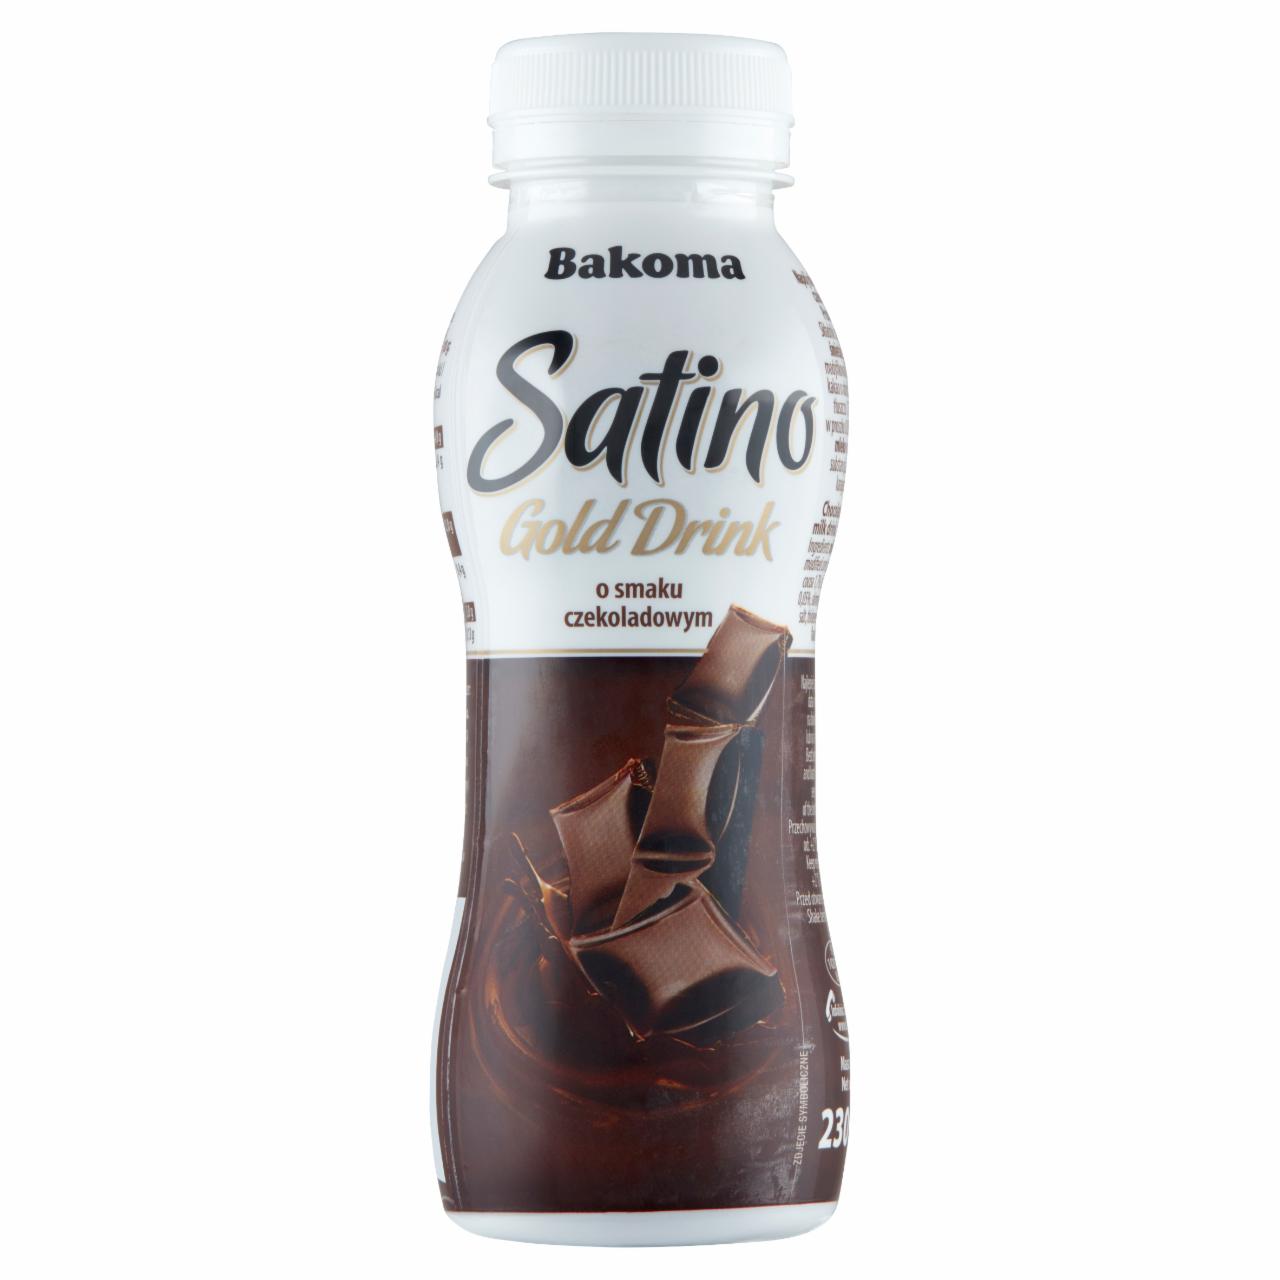 Zdjęcia - Bakoma Satino Gold Drink Napój mleczny smak czekoladowy 230 g